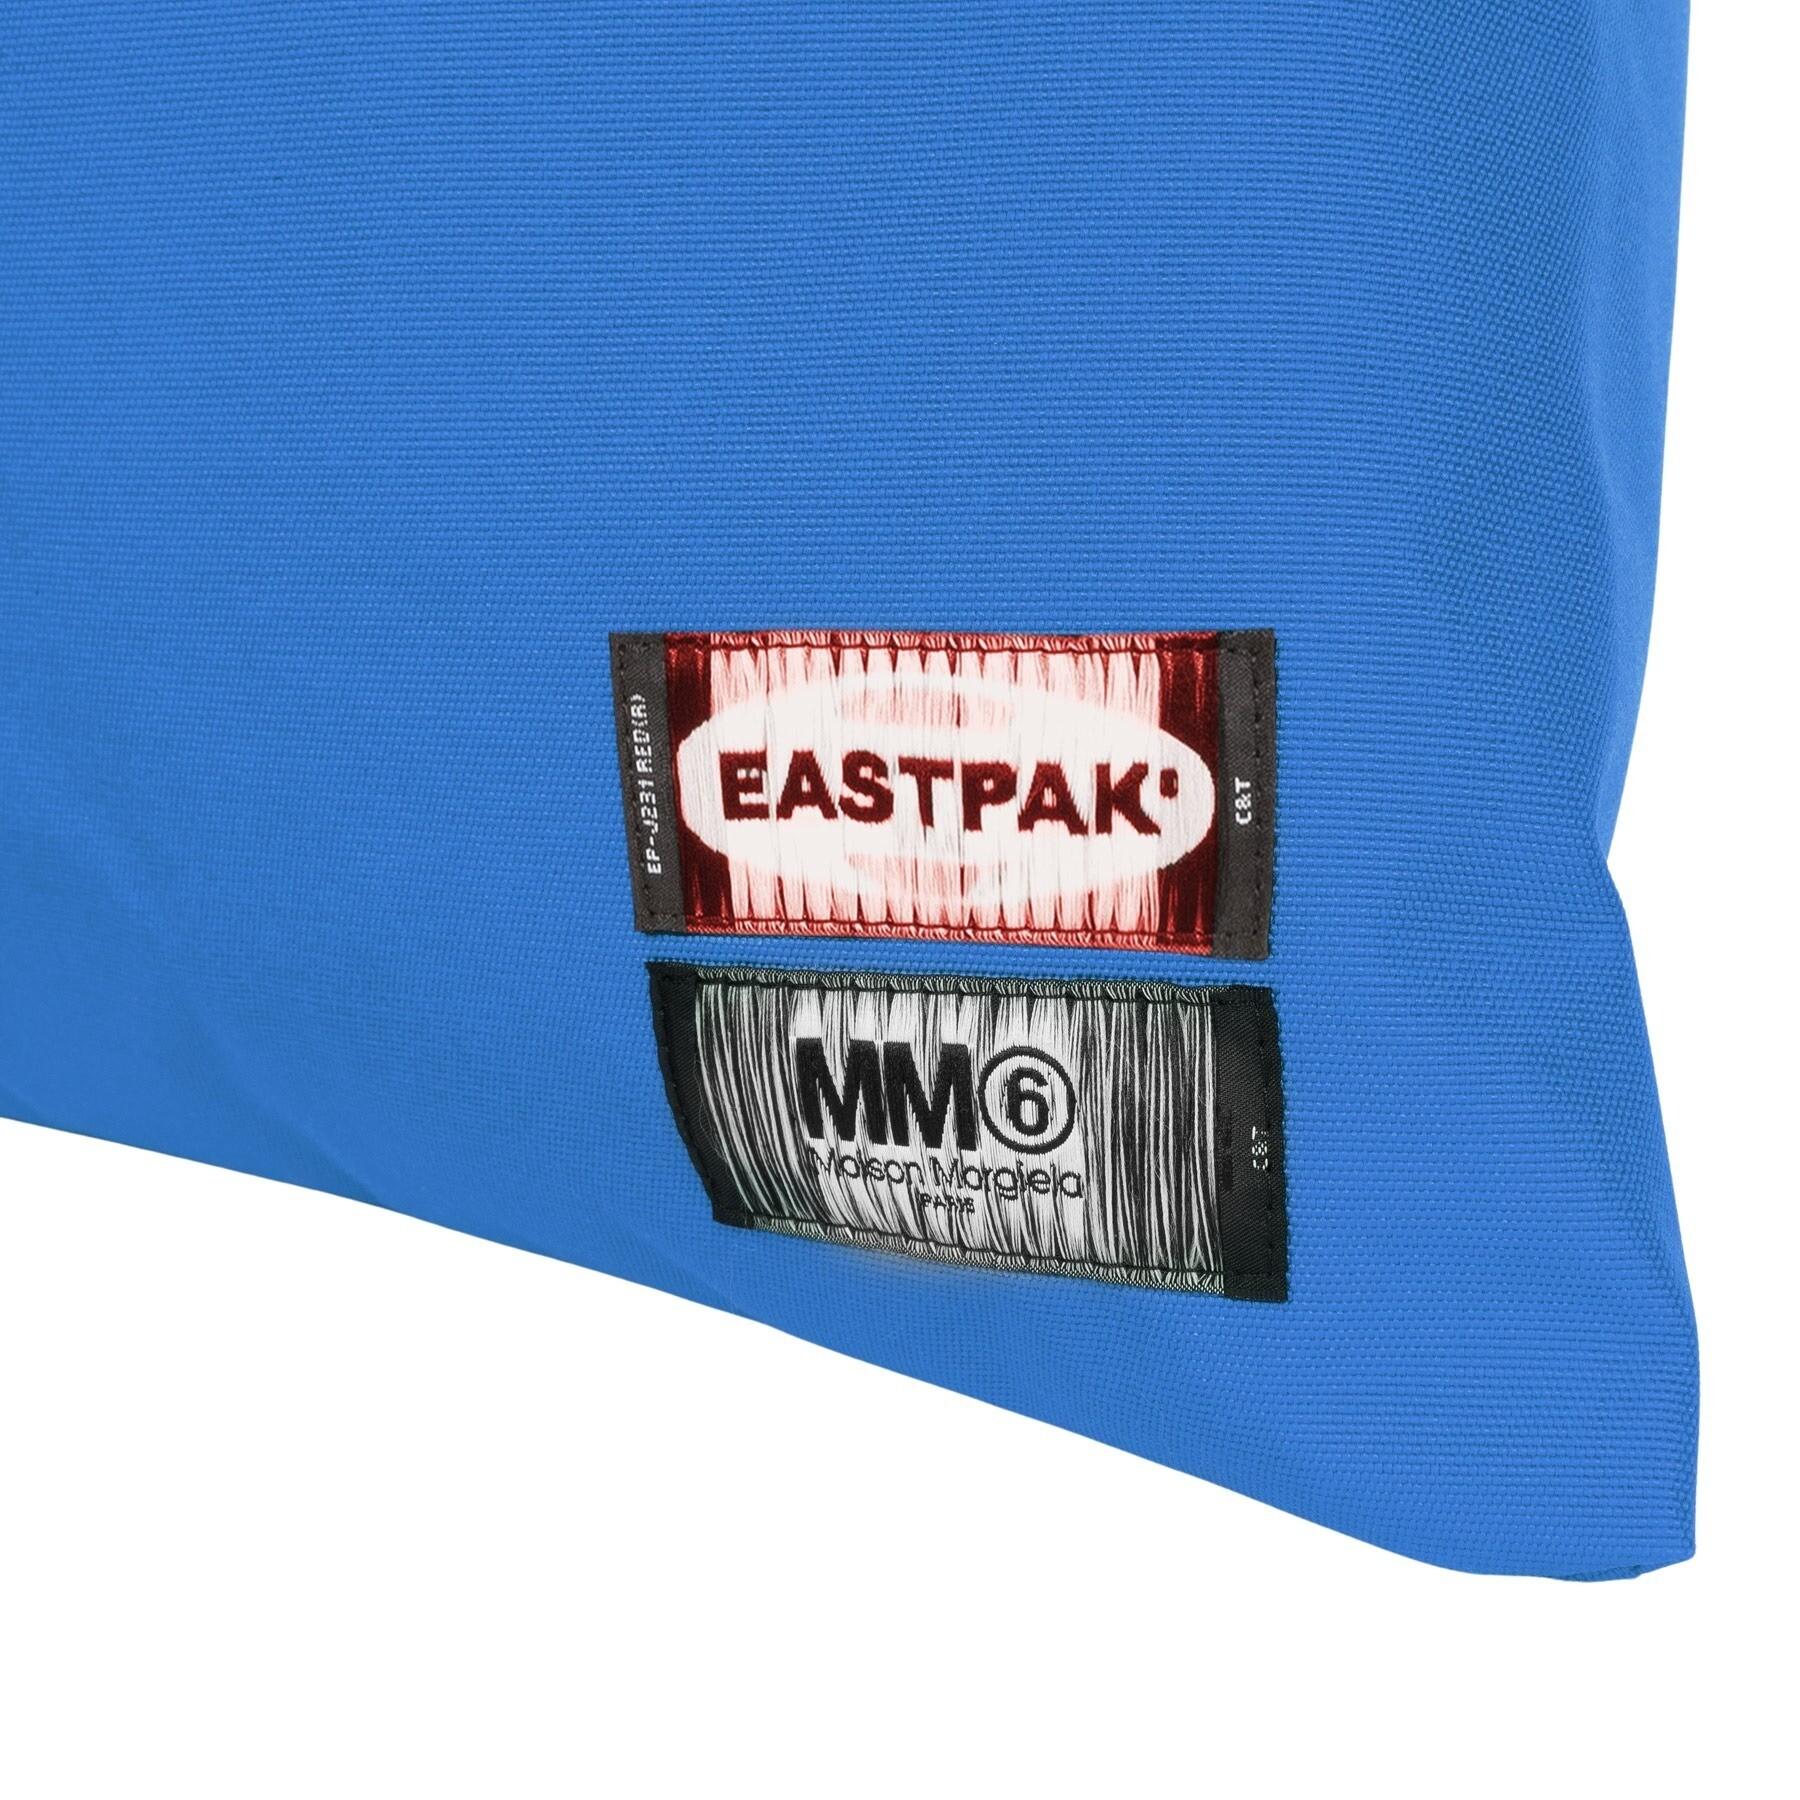 Handtasche Eastpak Tote MM6